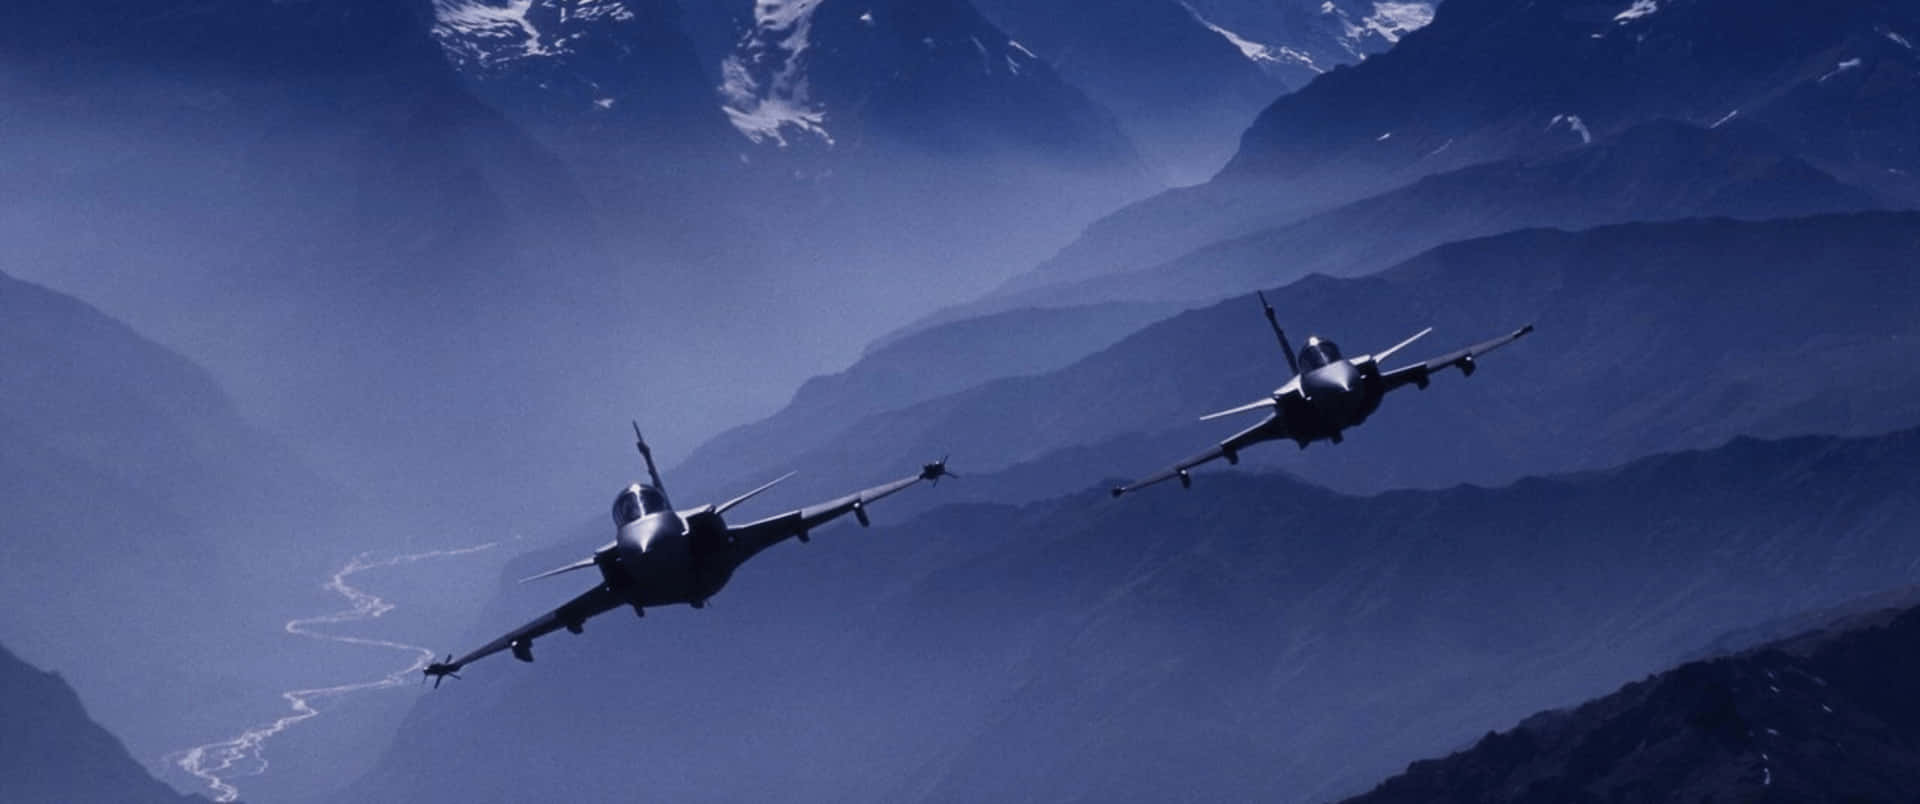 3440x1440p Planes Saab JAS 39 Gripen Background